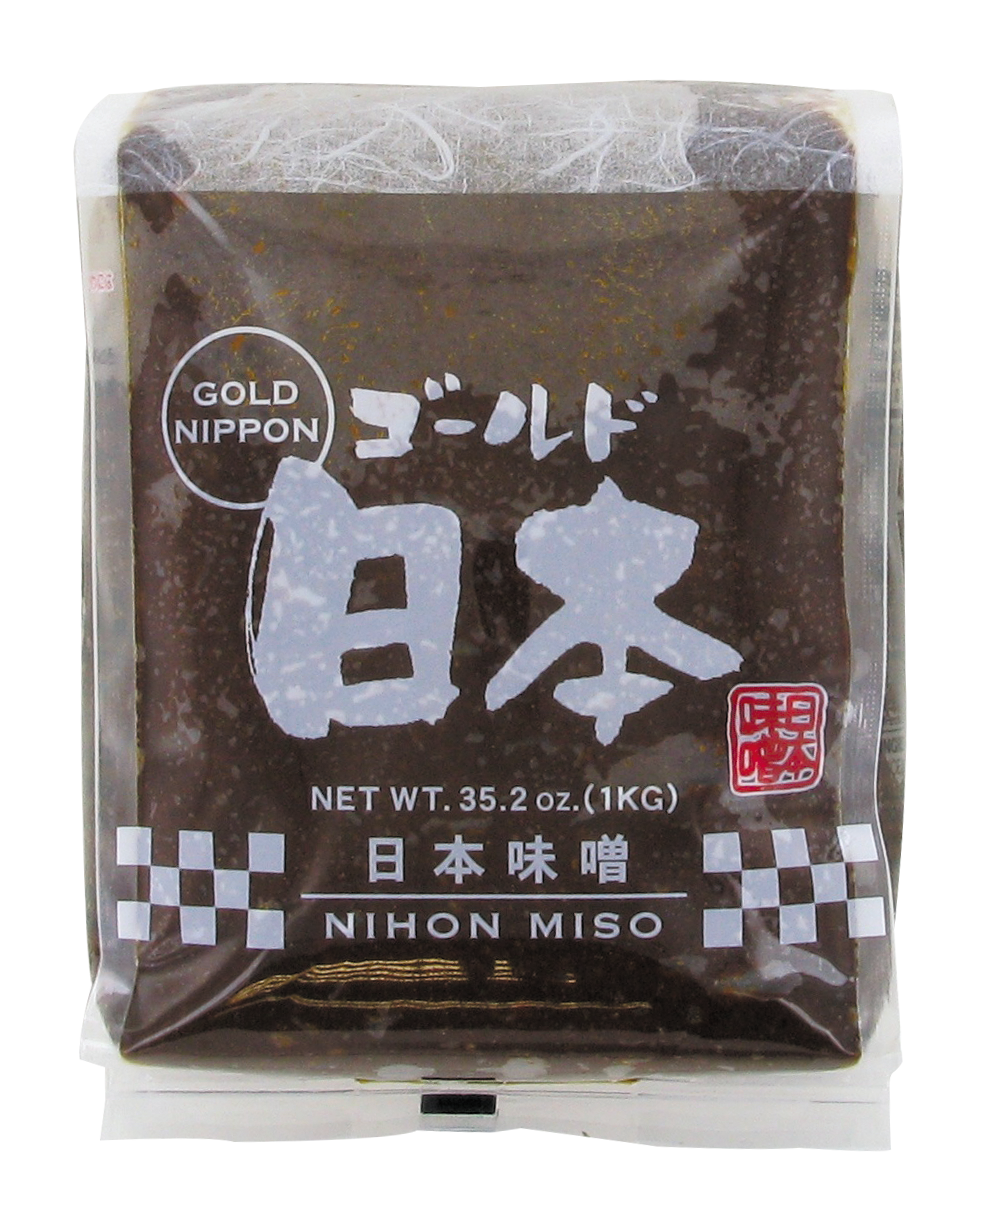 Pâte Miso rouge (红色味噌酱) NIHON MISO - Épicerie sucrée et salée